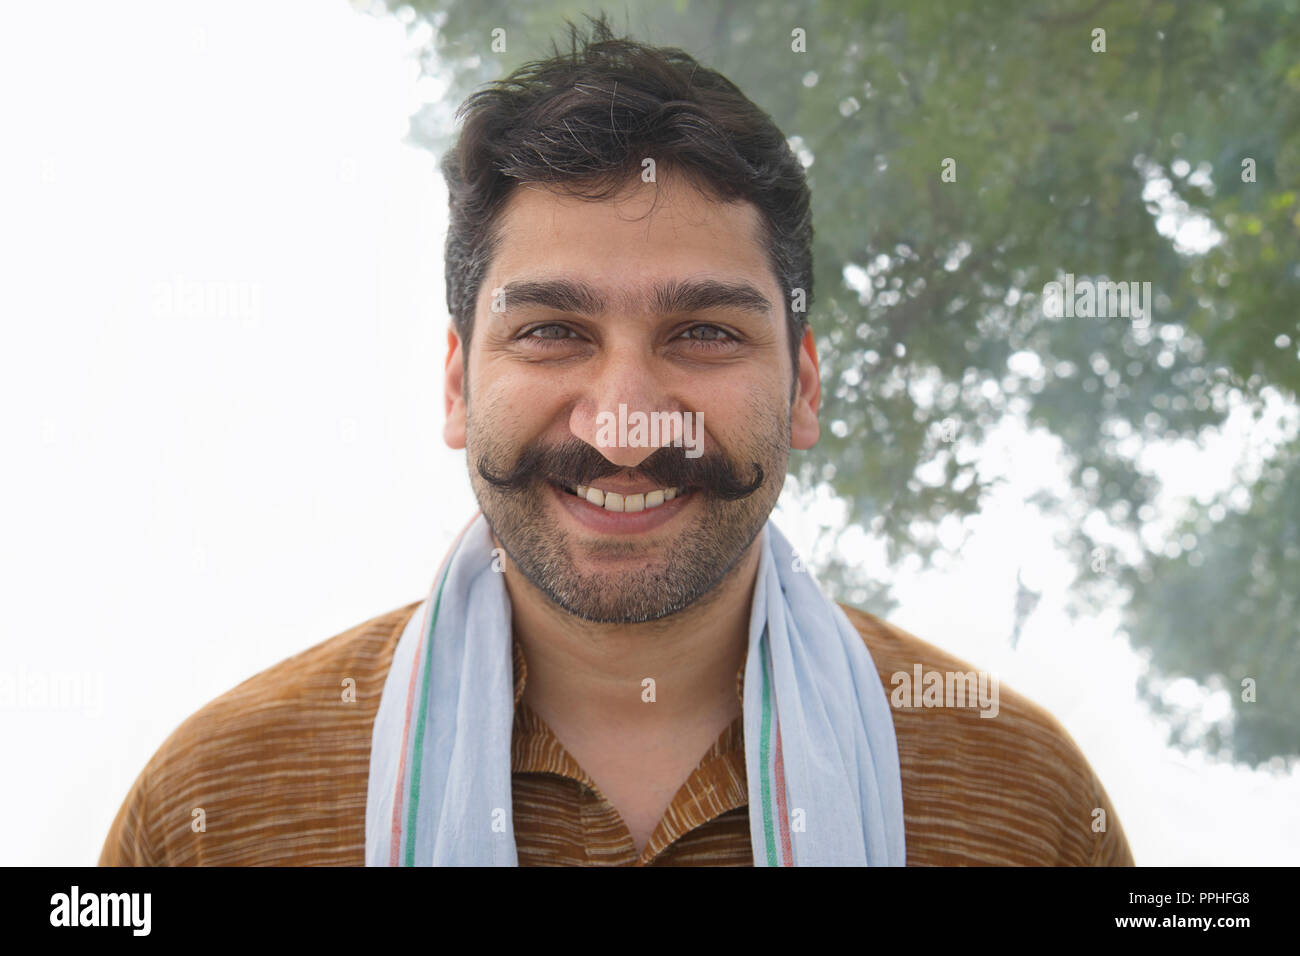 Ritratto di un villaggio sorridente uomo con i baffi arricciati. Foto Stock